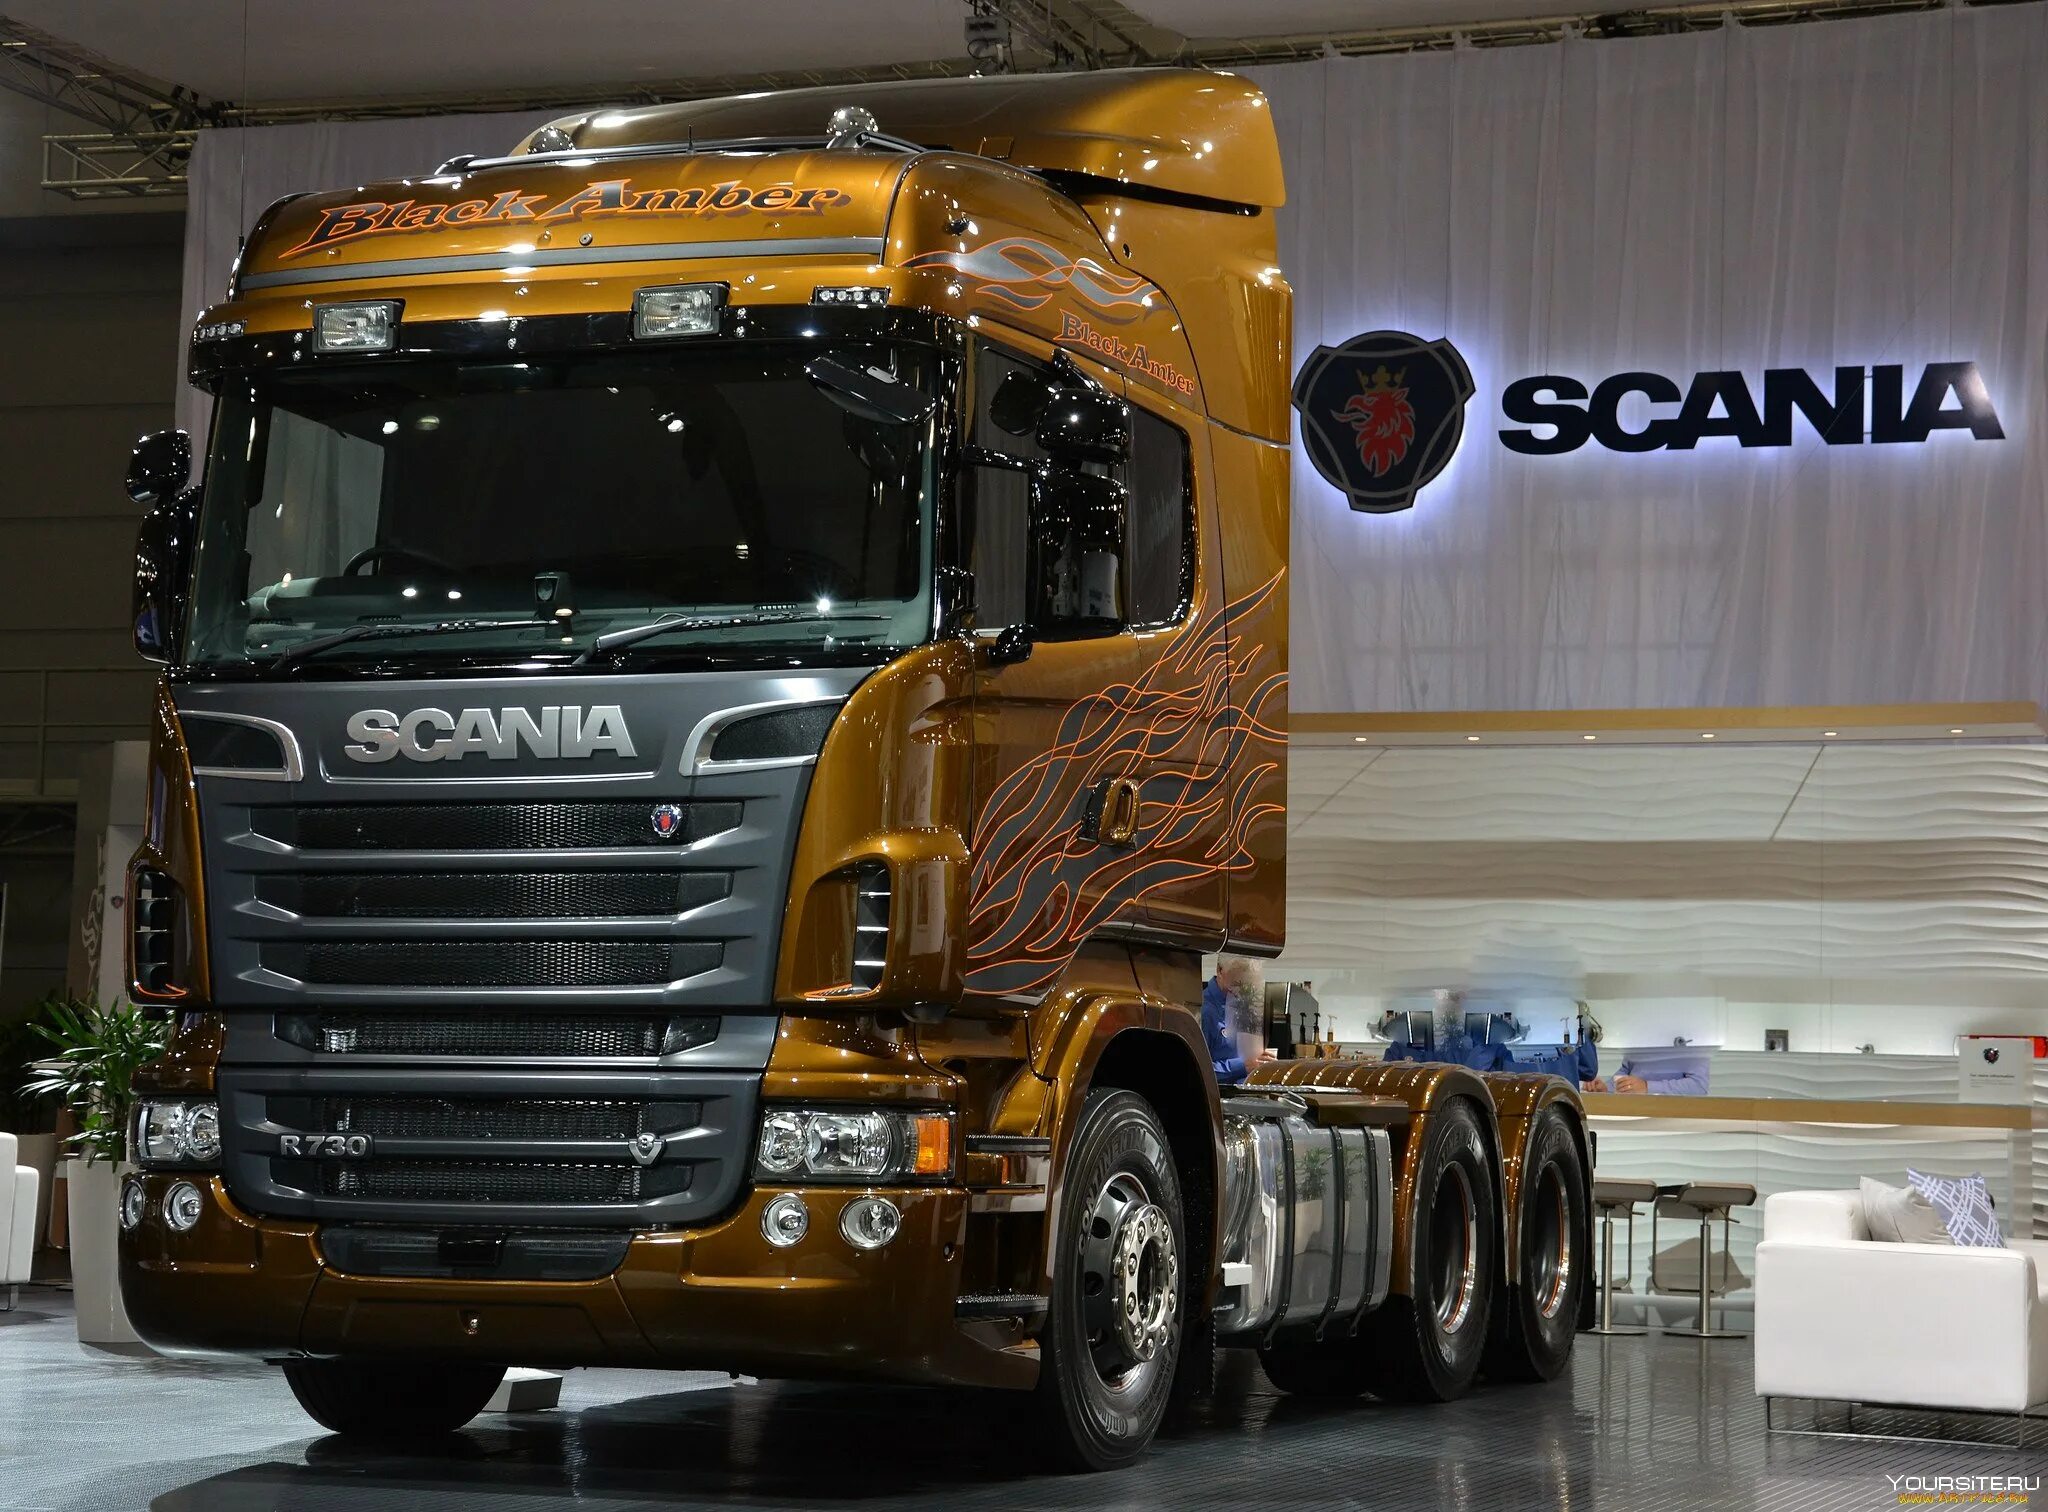 Сканиа. Скания р730. Scania 730. Scania r730 Highline. Scania r730 6x4.